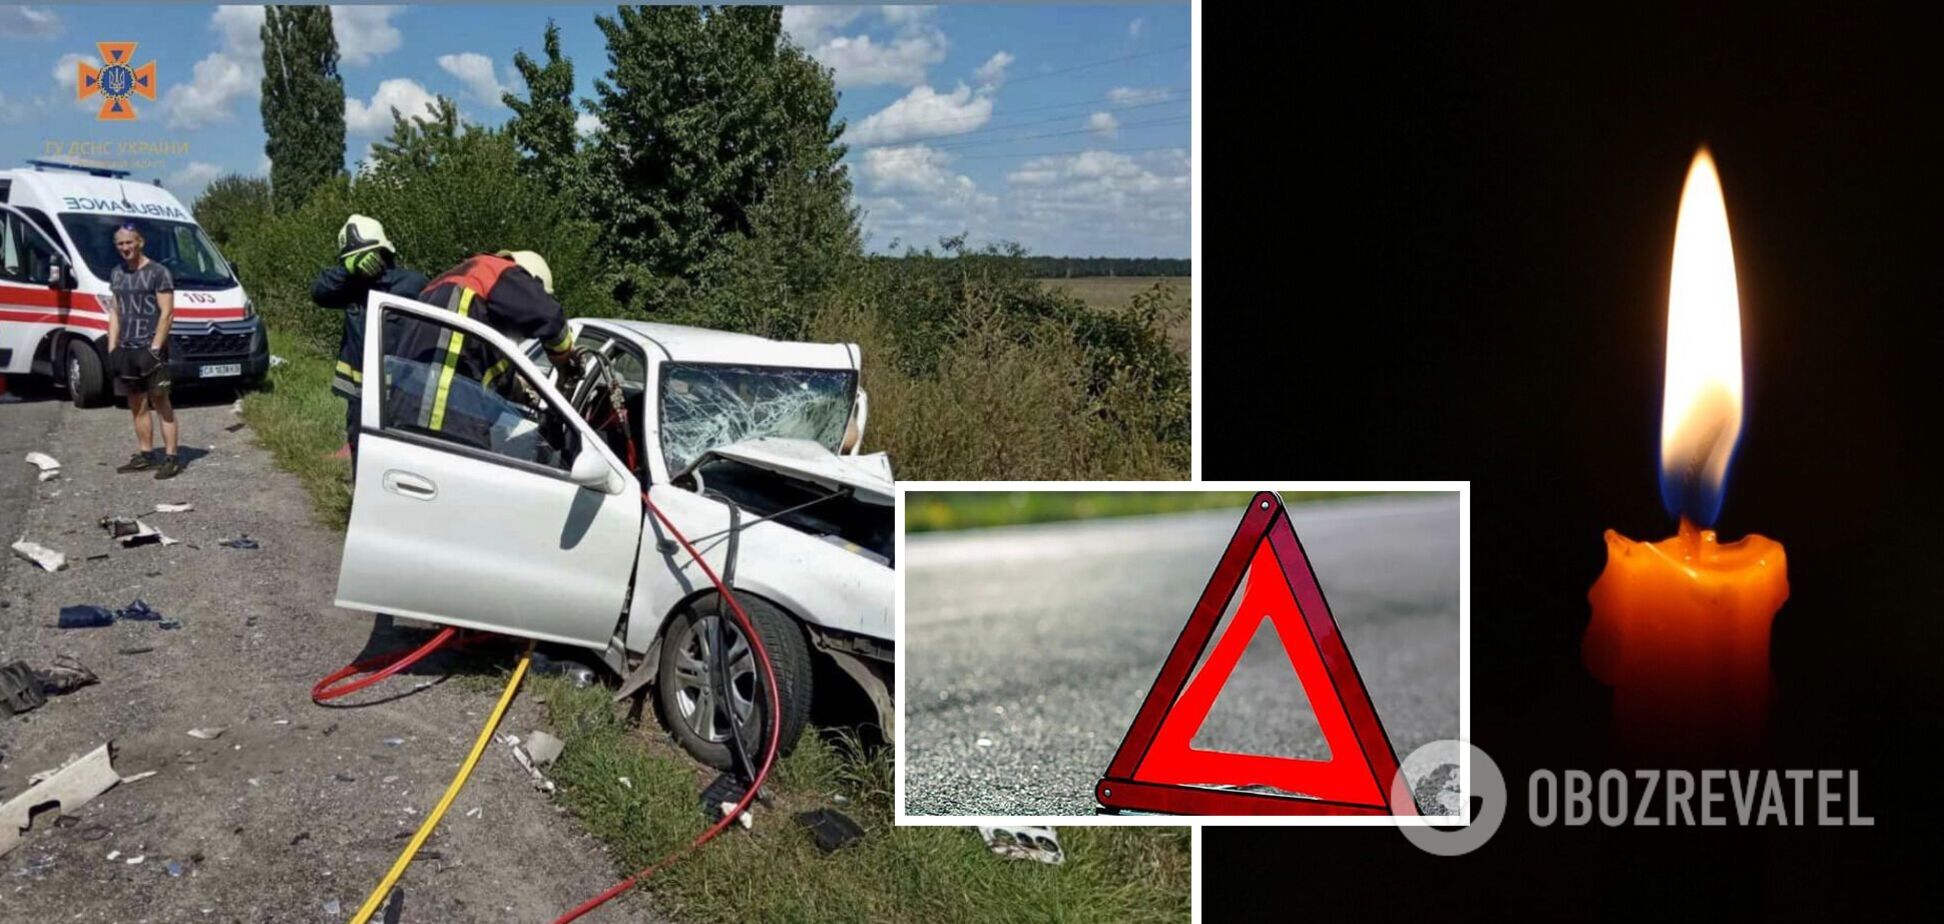 Авто разорвало на куски: в Черкасской области три автомобиля устроили смертельное ДТП. Фото